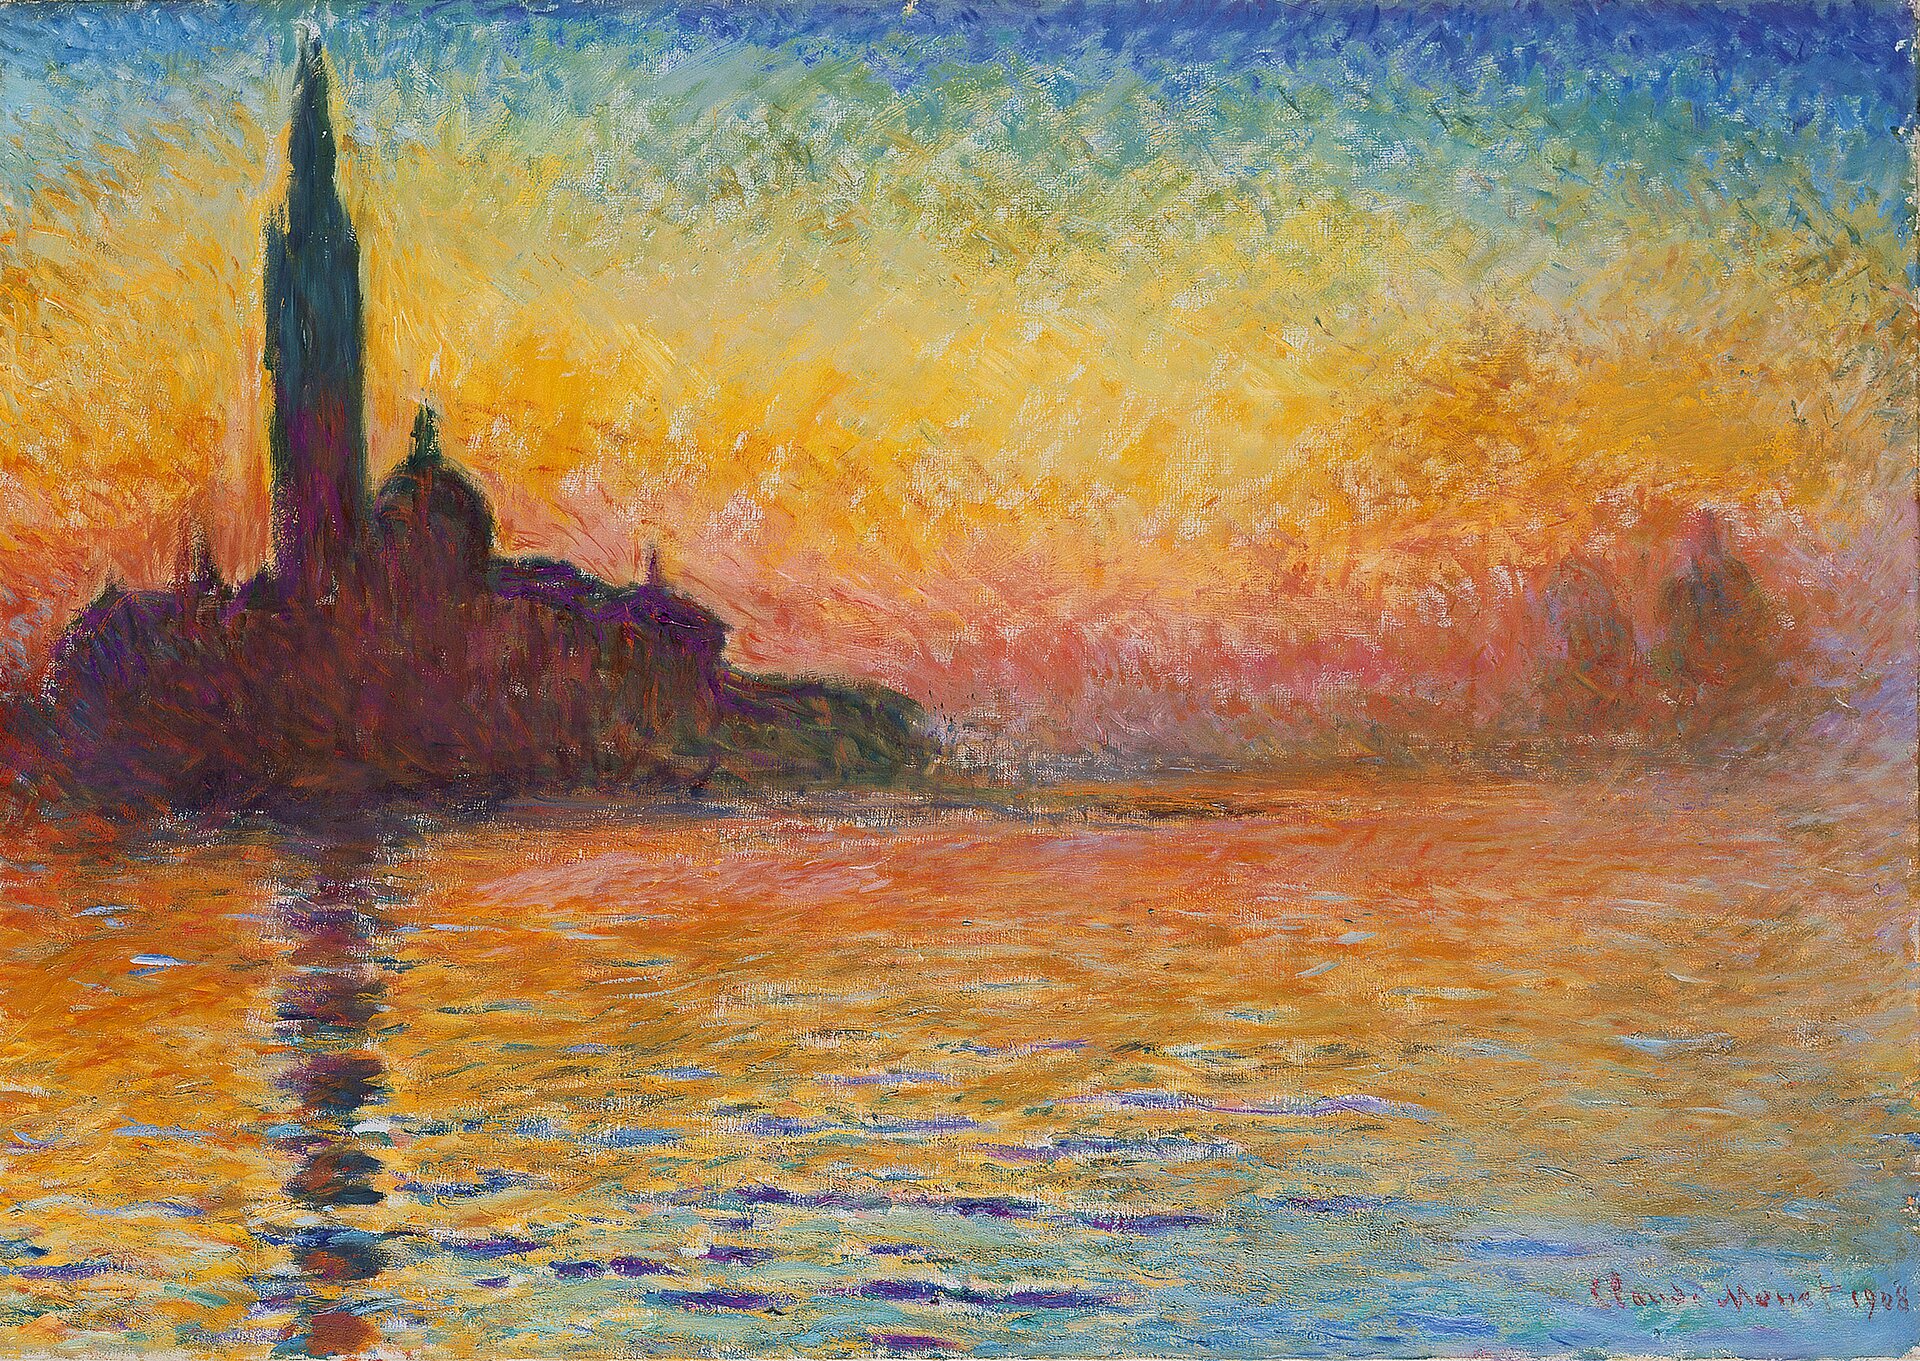 Ilustracja przedstawia obraz olejny „San Giorgio Maggiore o zachodzie słońca” namalowany przez Claude'a Moneta. Dzieło ukazuje kościół na tle zachodzącego słońca. Wieża budowli odbija się w drobnych falach zatoki. Obraz namalowany jest drobnymi plamkami czystego koloru. Czerwono-żółto-oranżowe muśnięcia pędzla oddają efekt zachodzącego słońca, odbijającego się w tafli wody. W ciemnej plamie kościoła pojawiają się fiolety, odcienie czerwonoczarne oraz barwy ciemnoniebieskie. W górnej części obrazu niebo jest błękitne. Ten sam kolor odbija się w wodzie, w dolnej partii dzieła. Obraz namalowany jest szeroką gamą barw: od ciepłych oranżów, żółcieni, brązów i fioletów, po chłodne błękity.